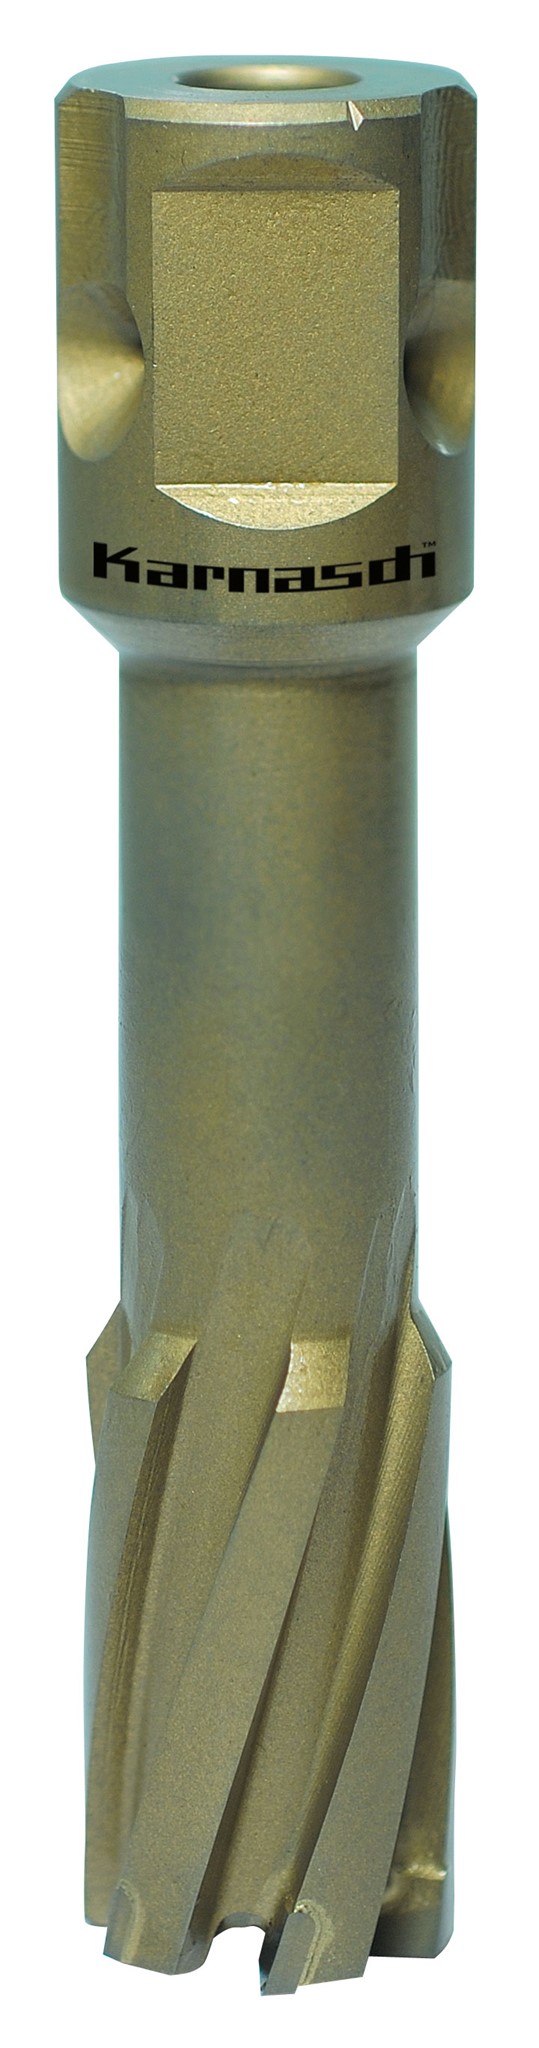 Bild von Kernbohrer Metallkraft HARD-LINE 55 Universal Ø 44 mm